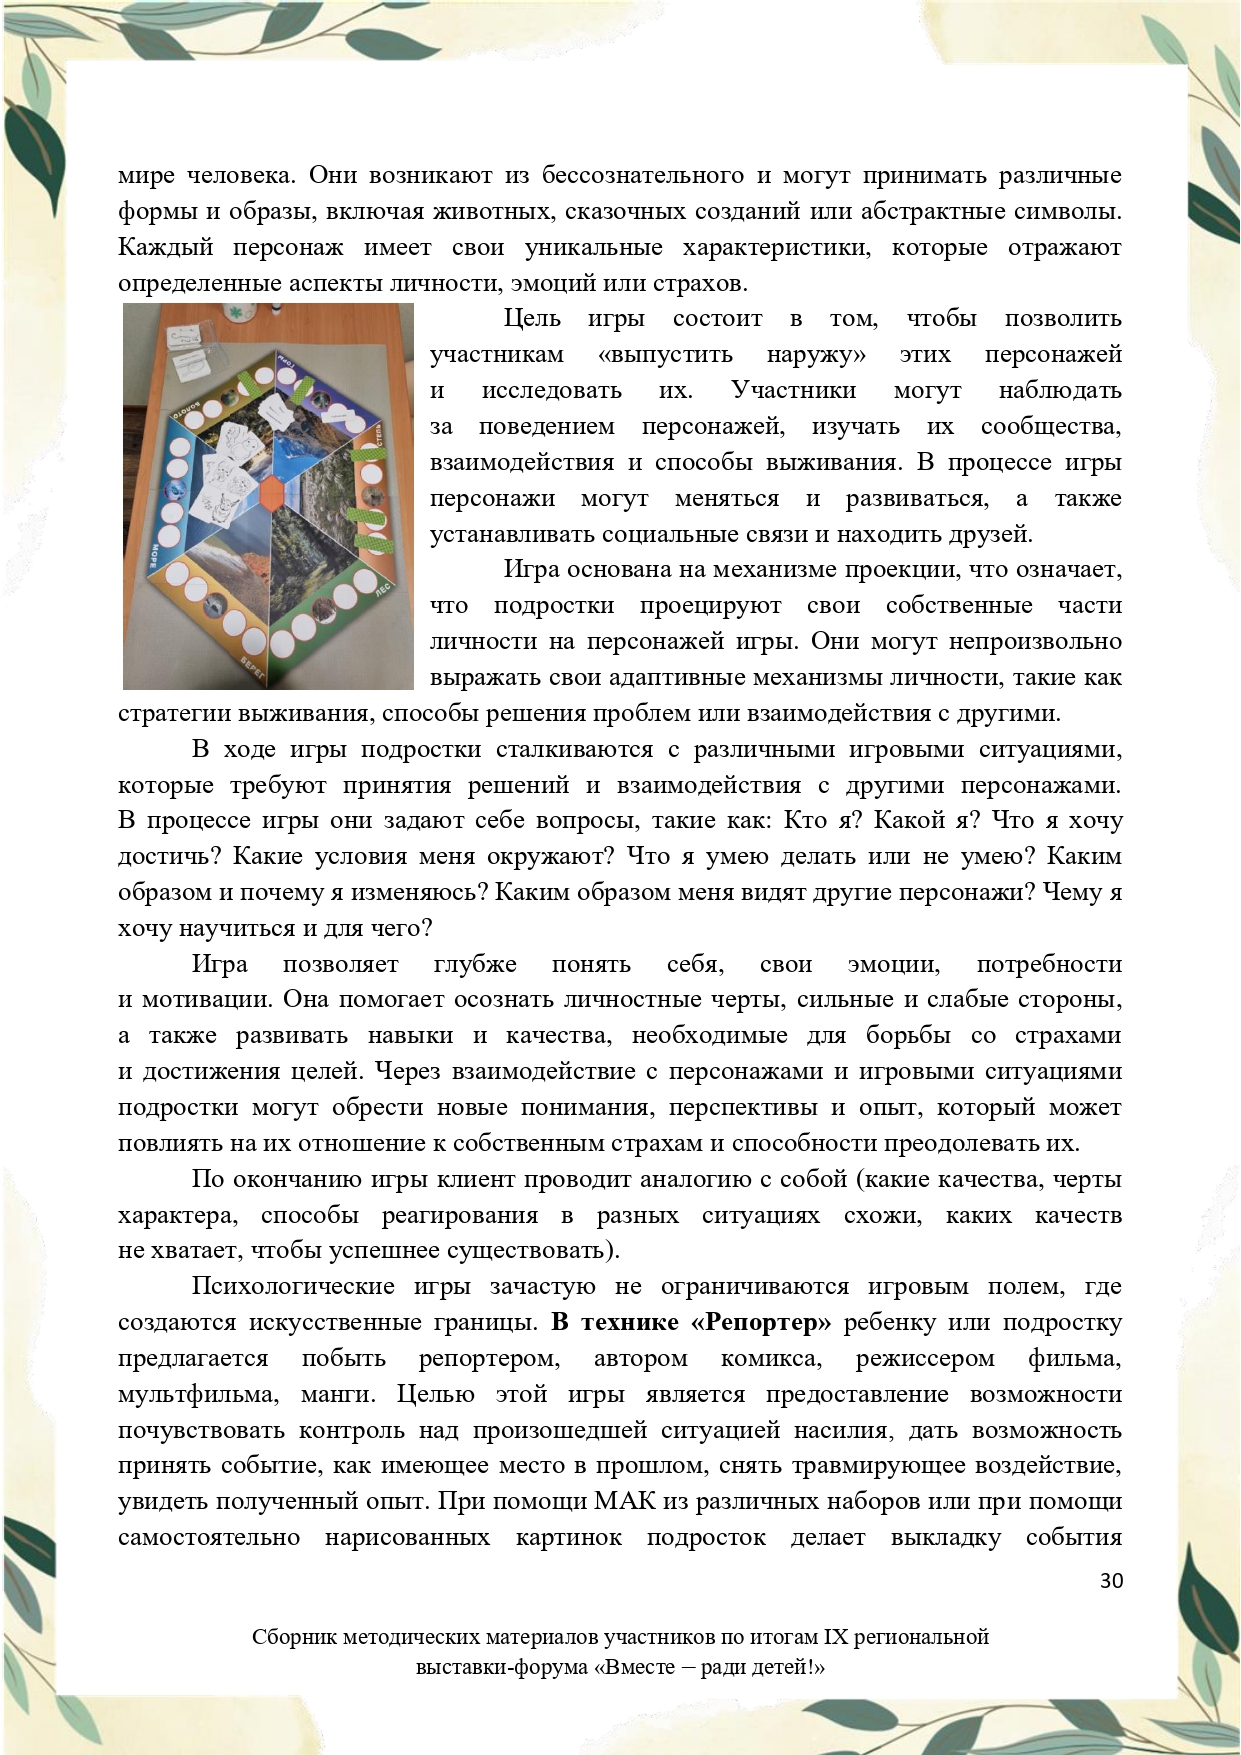 Sbornik_metodicheskikh_materialov_uchastnikov_IX_regionalnoy_vystavki-foruma_Vmeste__radi_detey_33__2023_page-0030